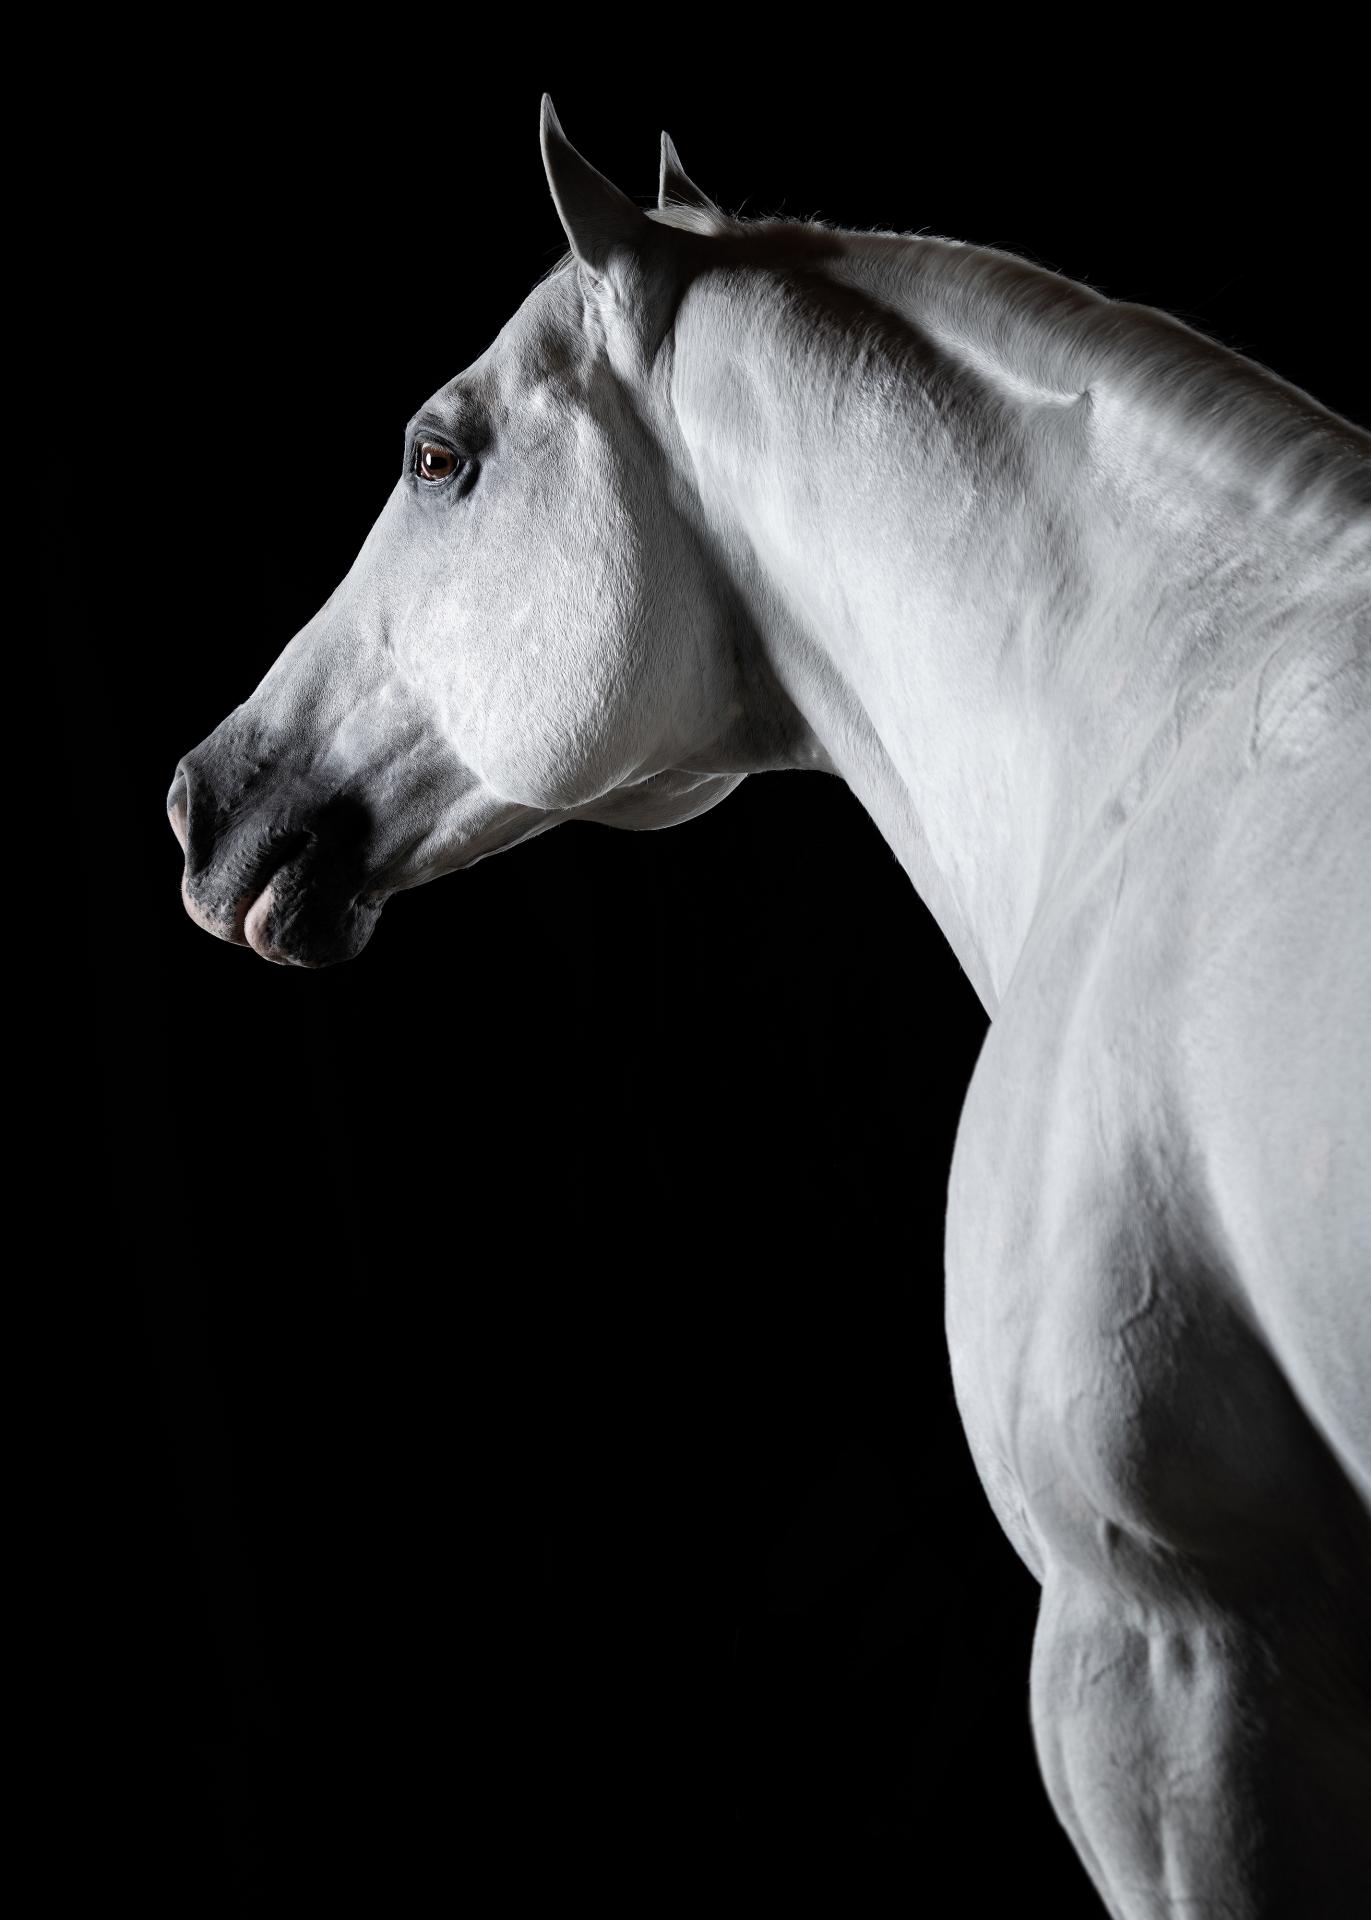 New York Photography Awards Winner - Horse Soul